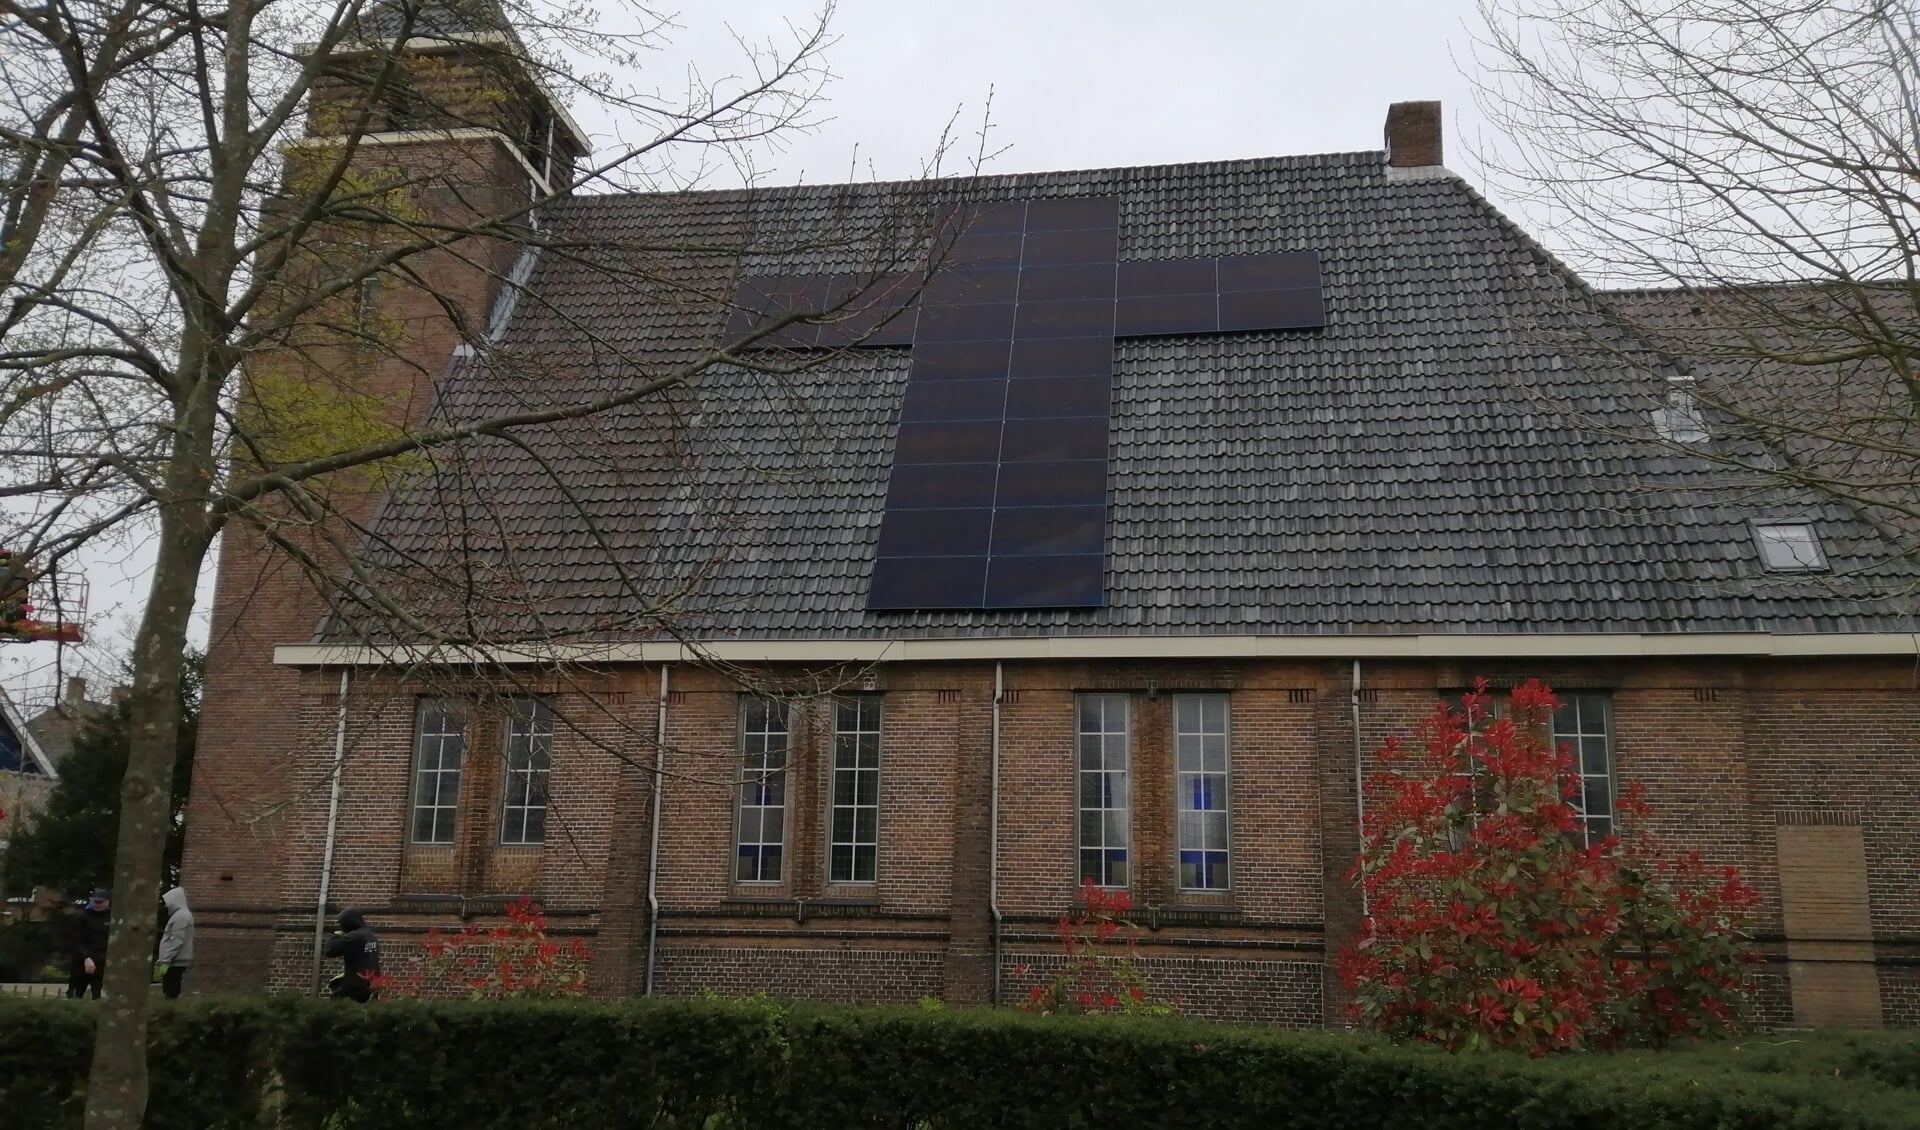 LANDSMEER - Je kunt zonnepanelen in lange rijen op je dak laten leggen, maar het kan ook anders. Op het dak van kerkgebouw Het Kruispunt zijn ze vandaag in stijl geplaatst.